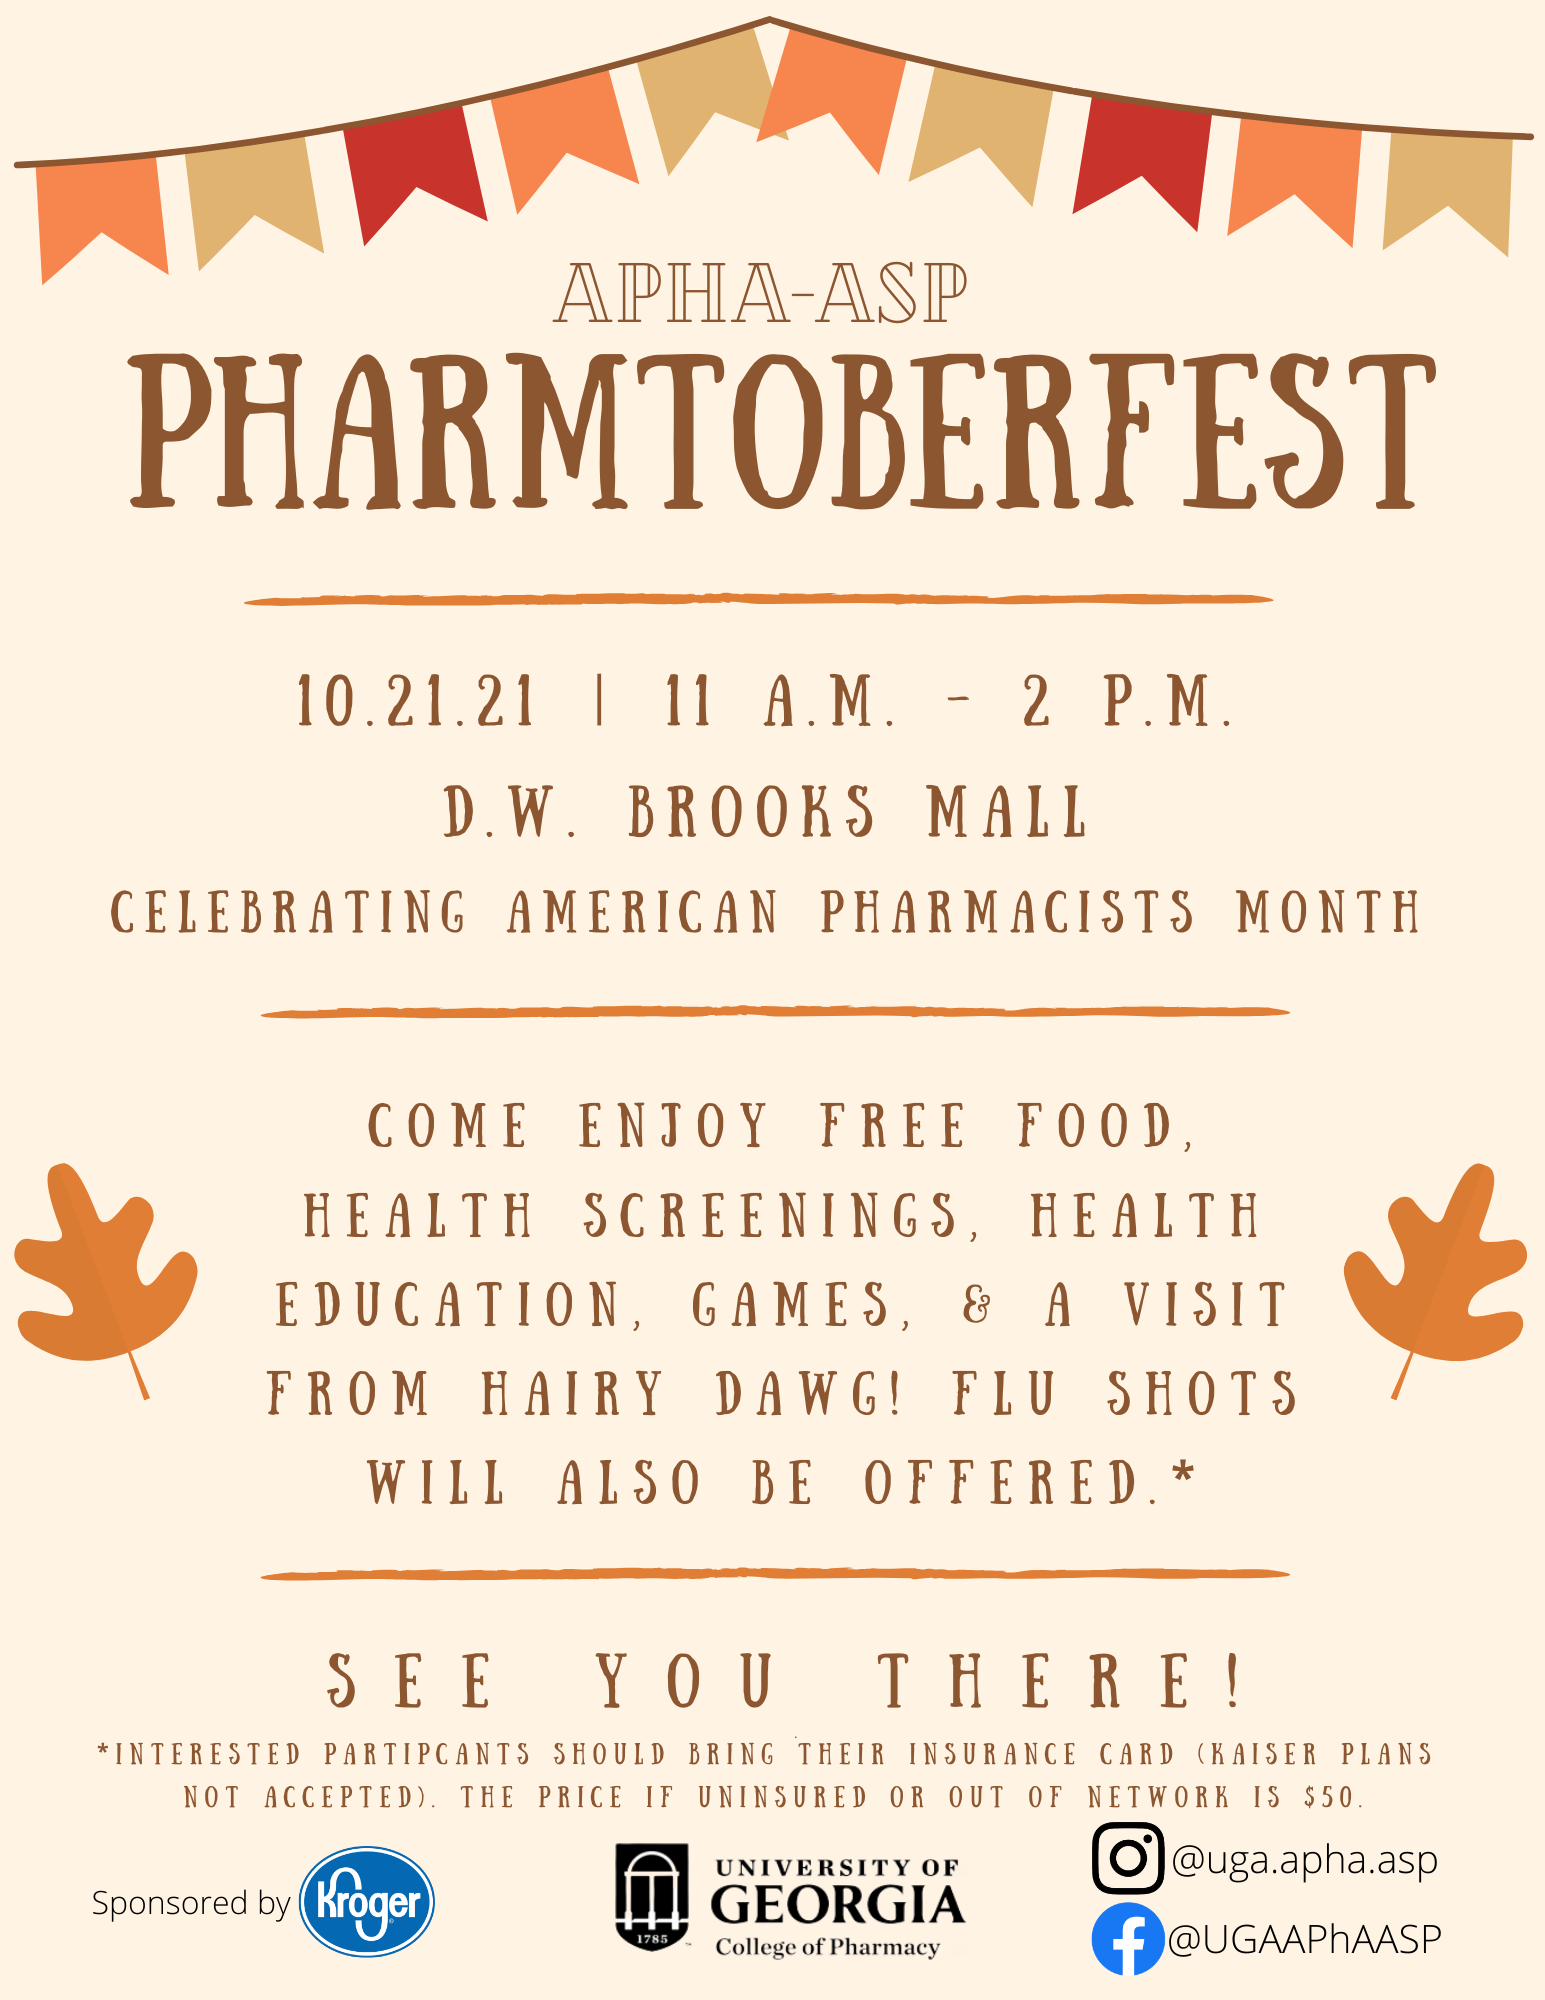 19th Annual Pharmtoberfest Health Fair is October 21